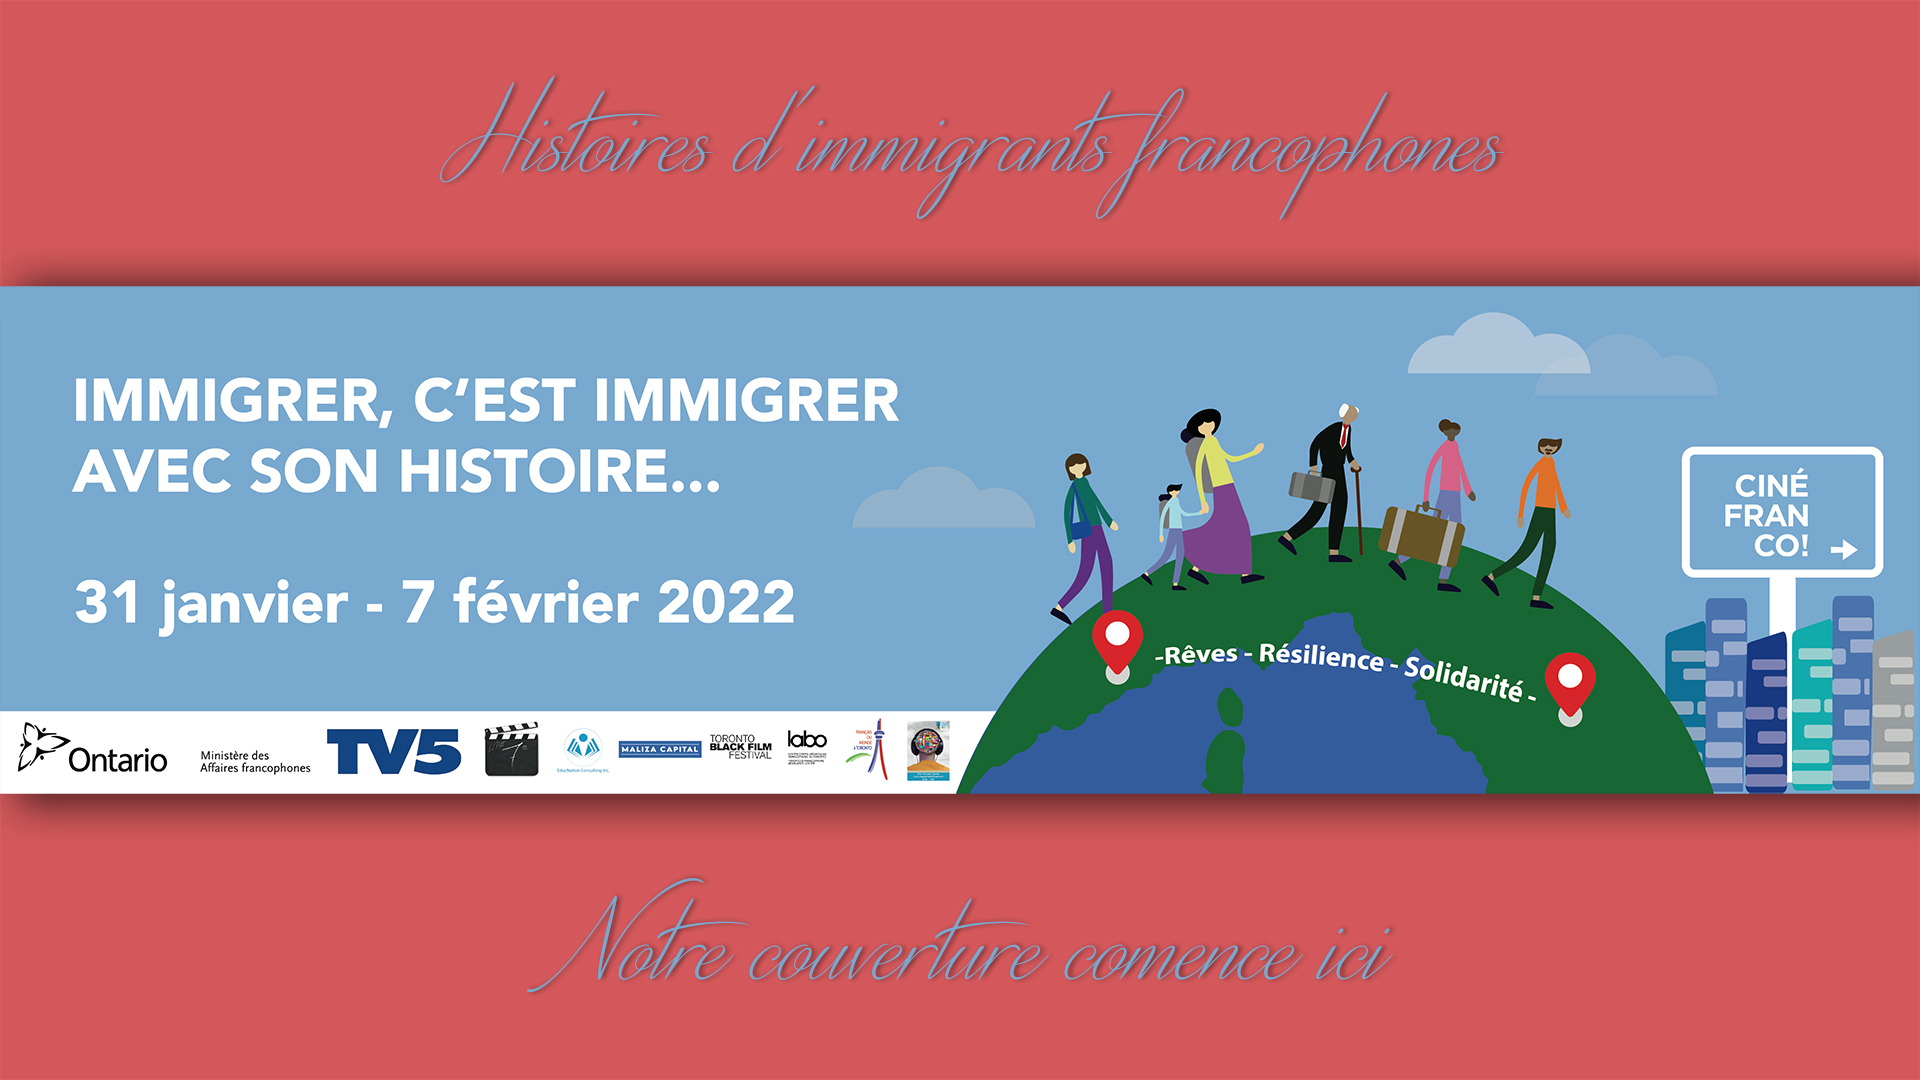 Présentation Histoires immigrants Francophones - Une